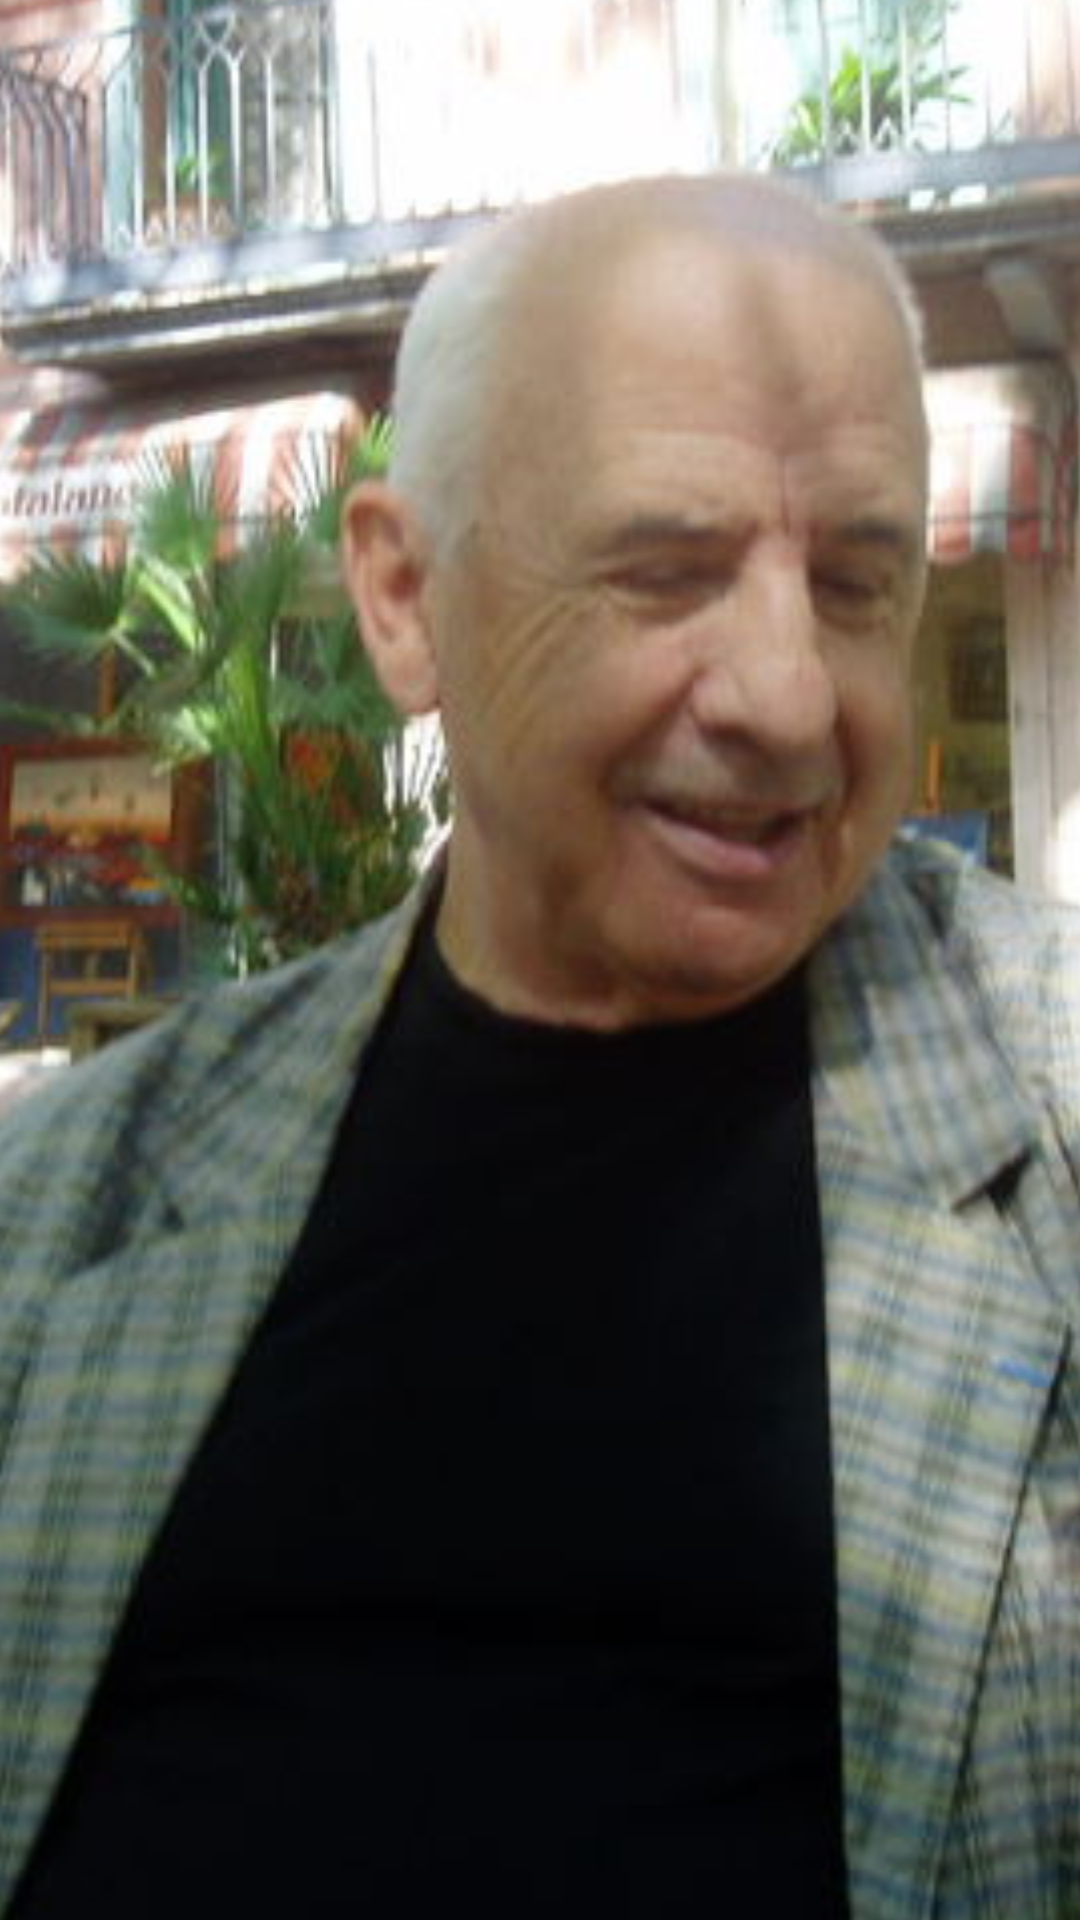 Claude Massé